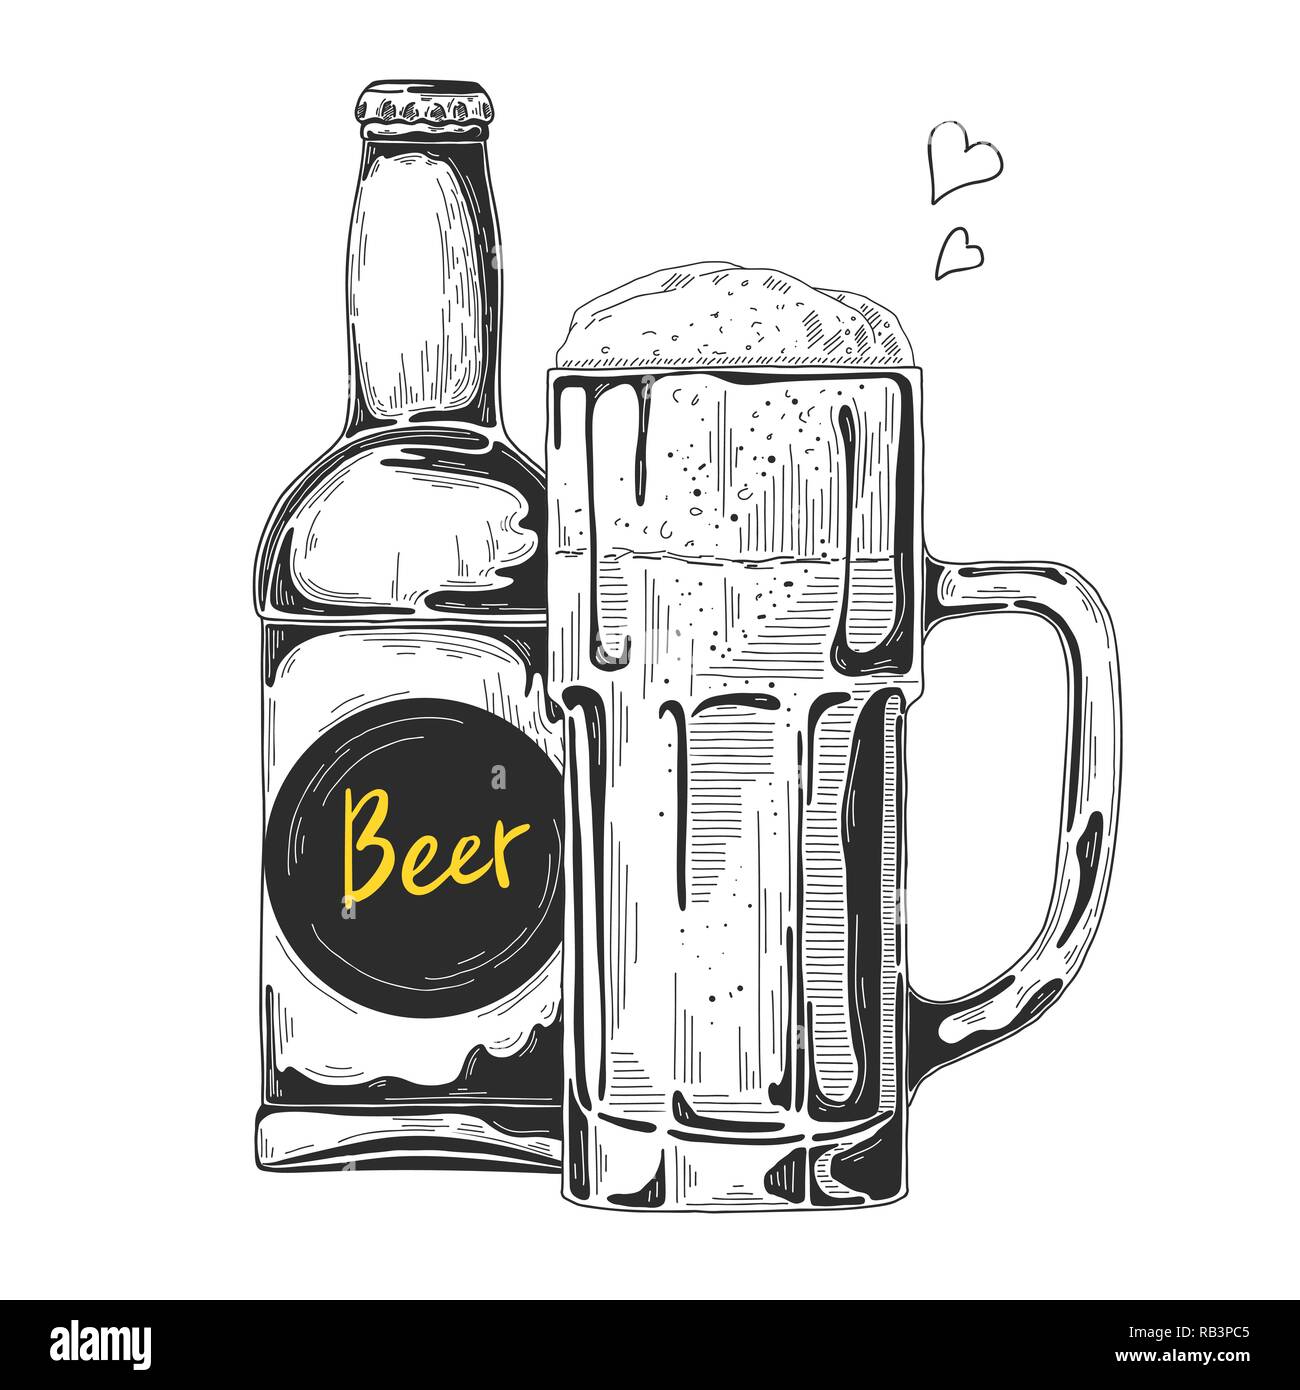 Overflow beer bottle Stock Vector Images - Alamy